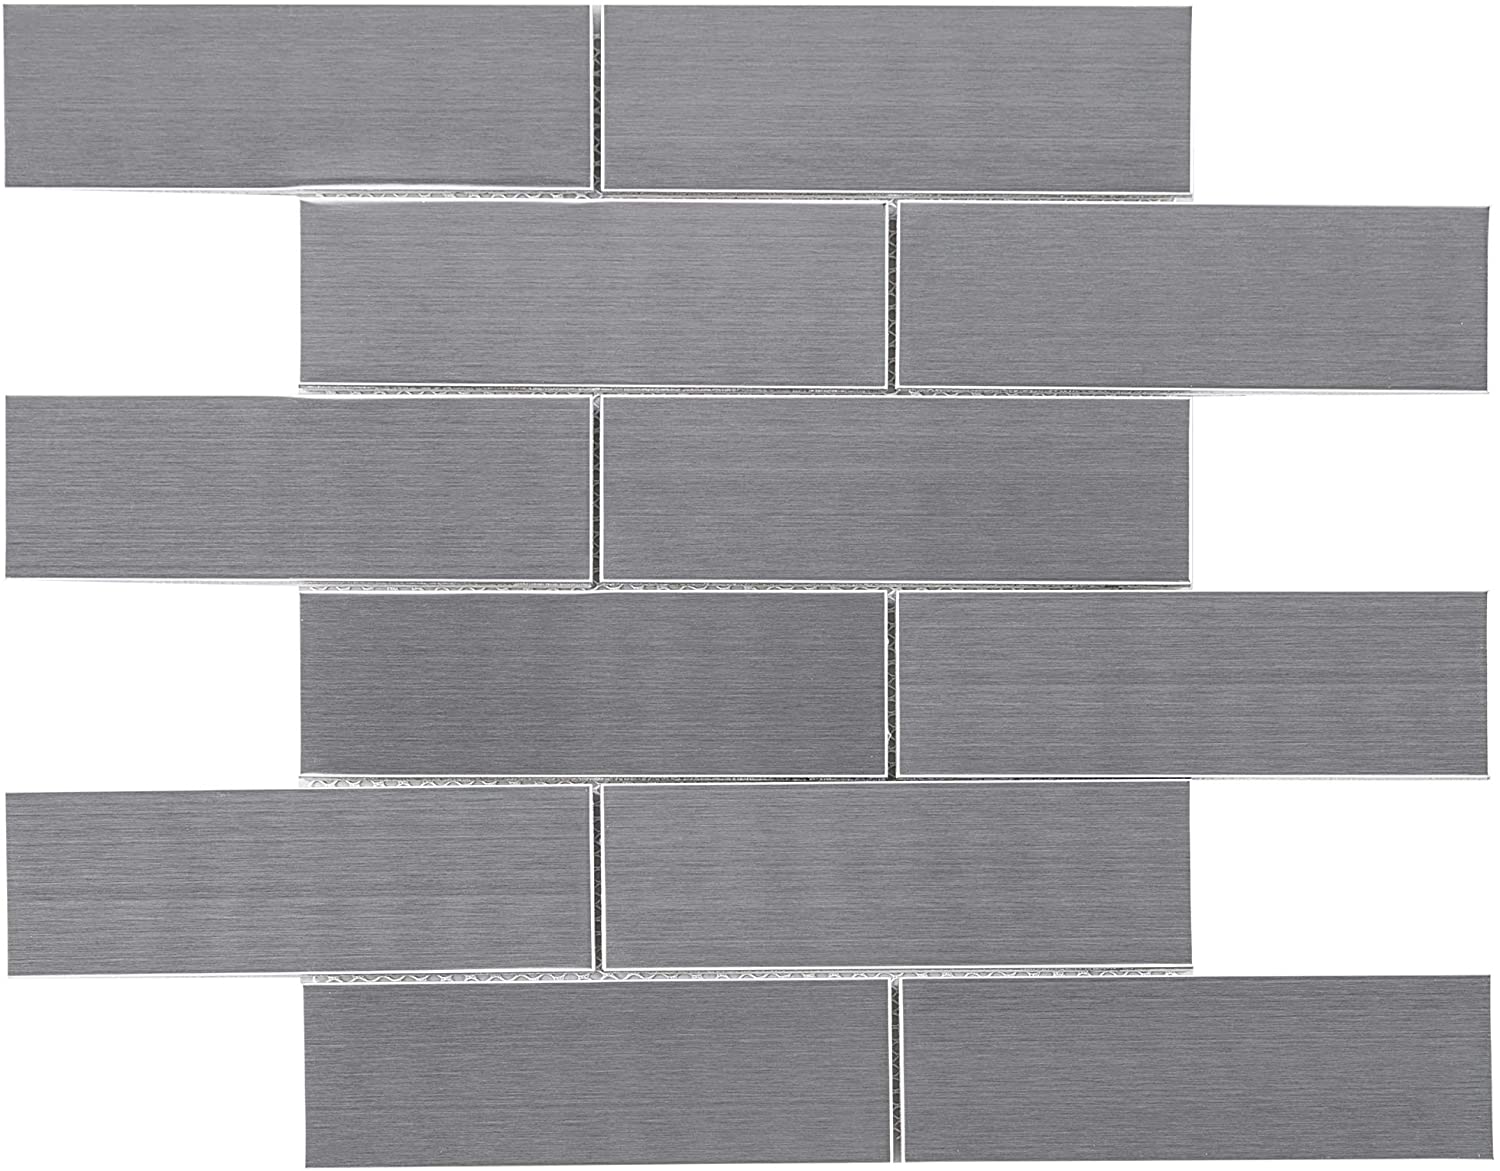 2"x6" Stainless Steel Brick Metallic Subway Mosaic Tile Backsplash for Wall, Kitchen Backsplash